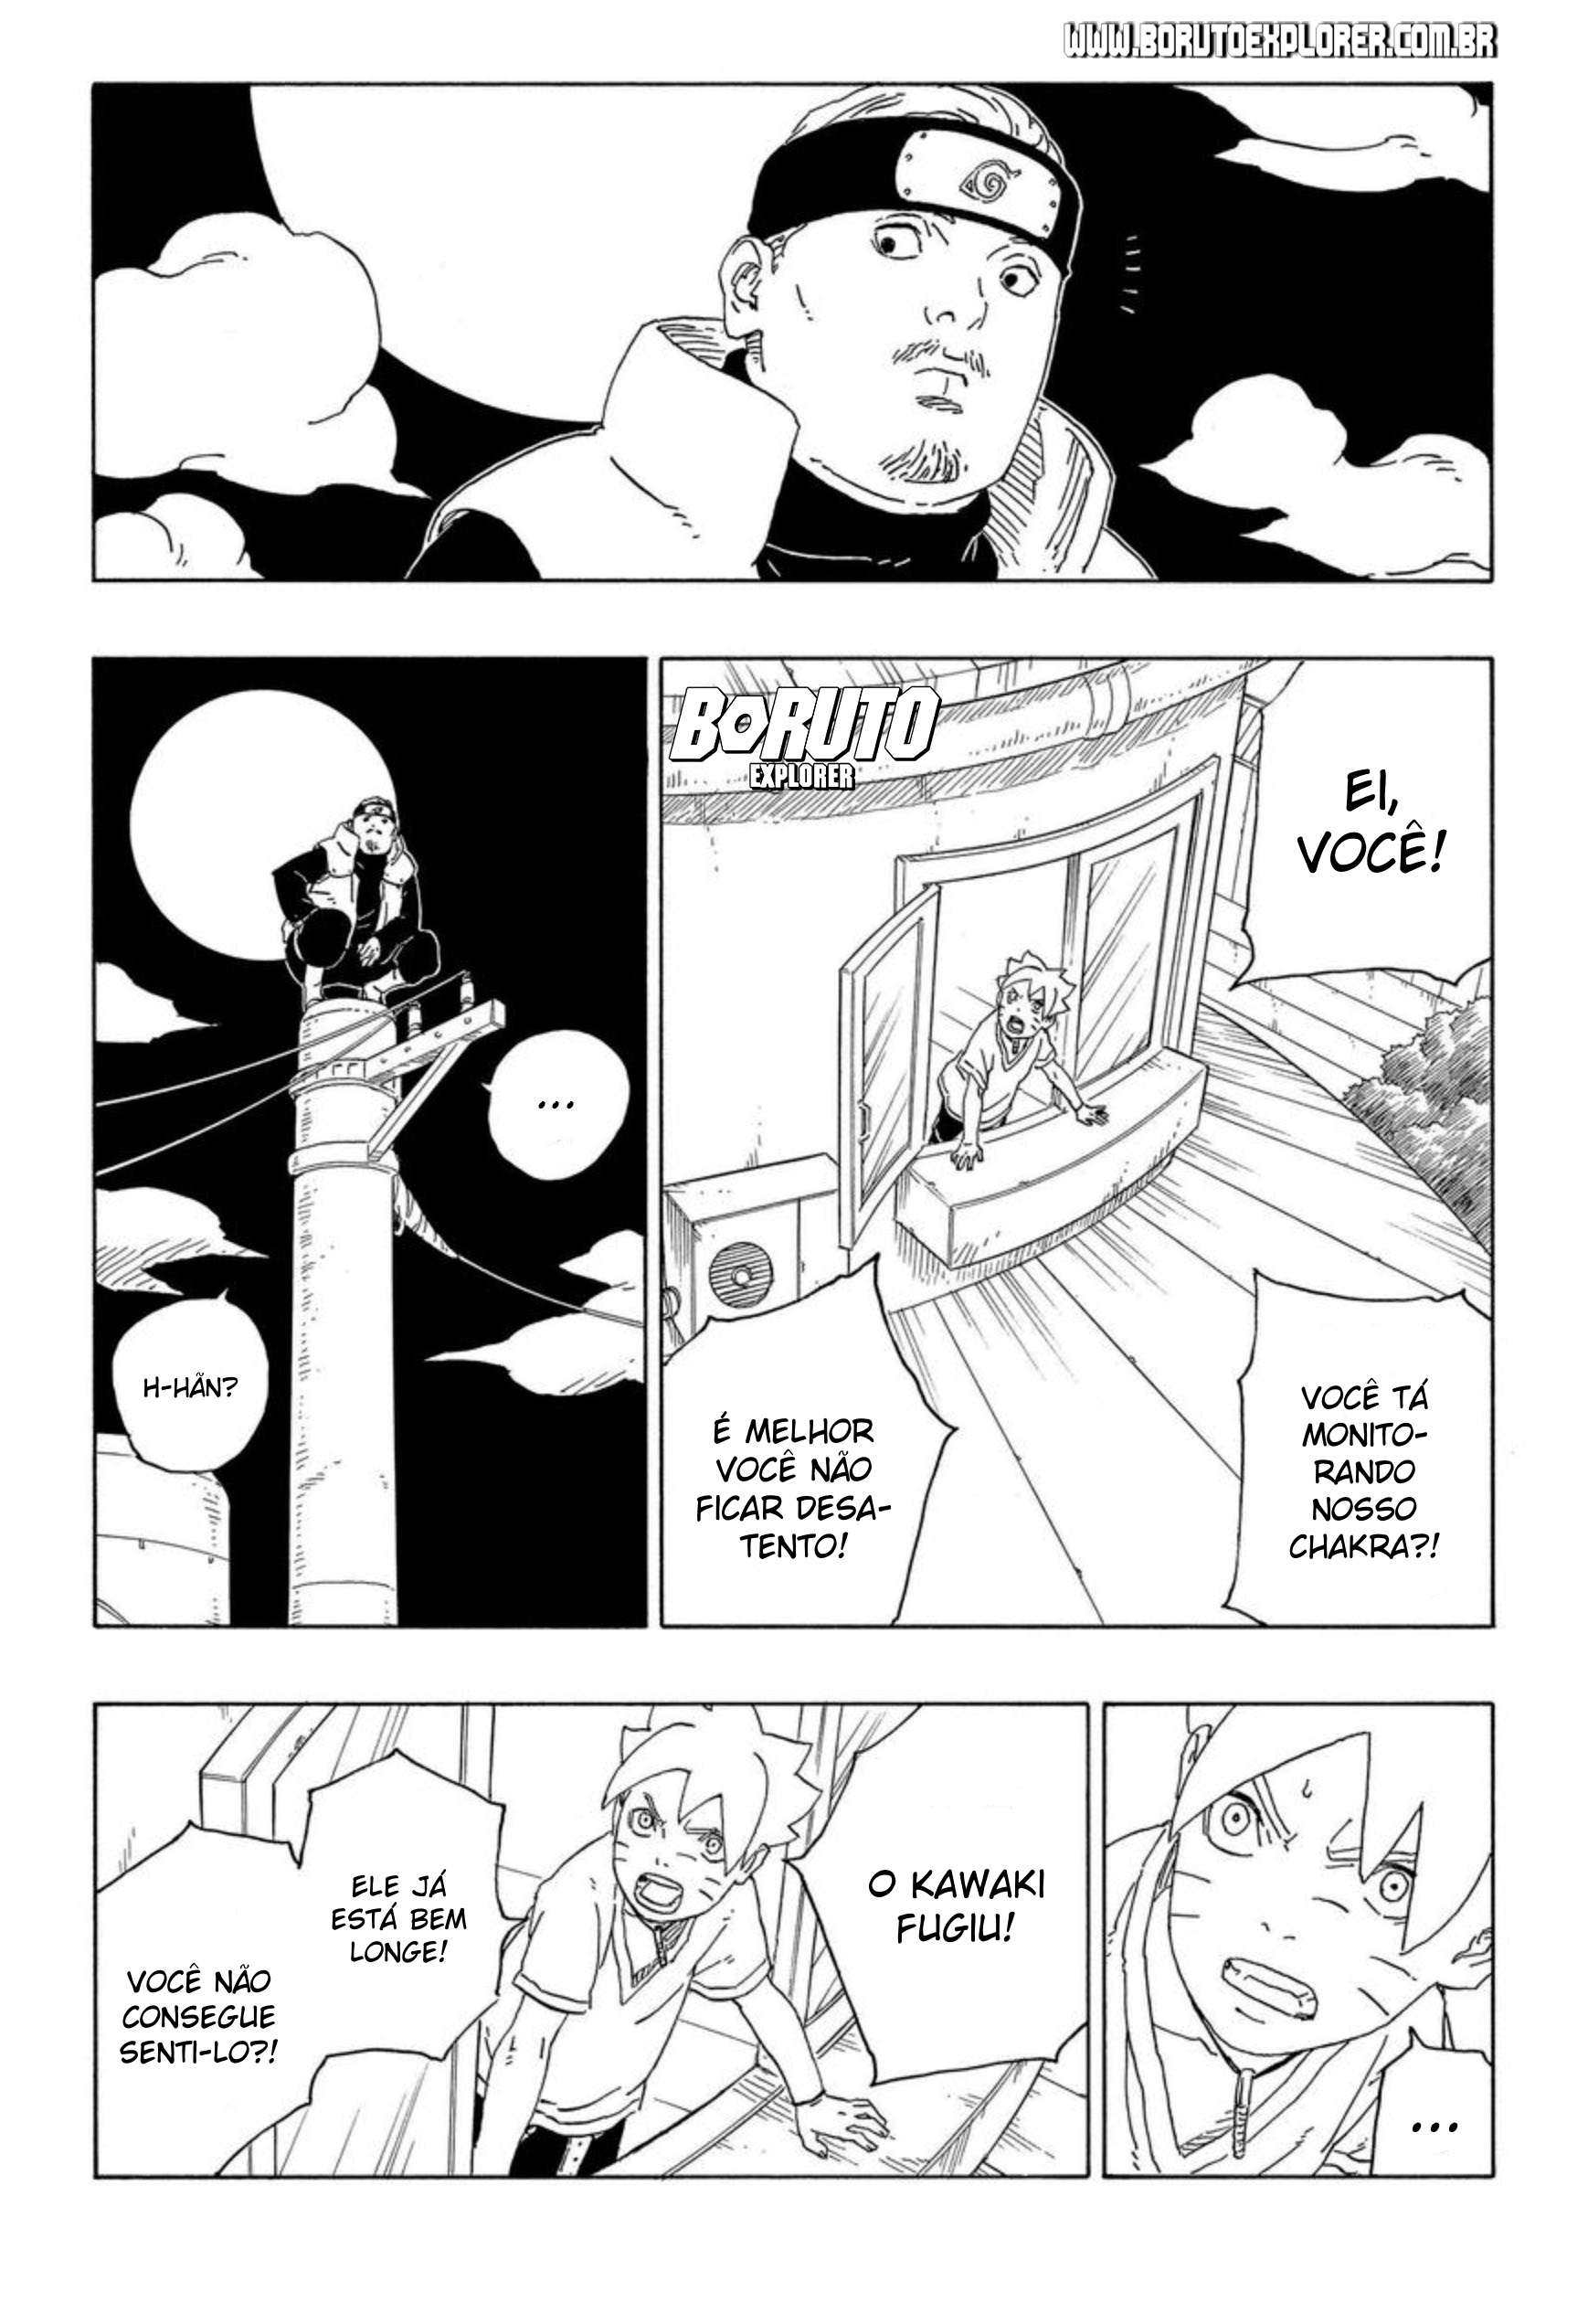 Boruto Explorer - Anime x Mangá 🔥 A introdução da reunião da Kara abordou  algumas lacunas que foram preenchidas com o arco anterior; o que deu mais  ênfase ao contexto do anime